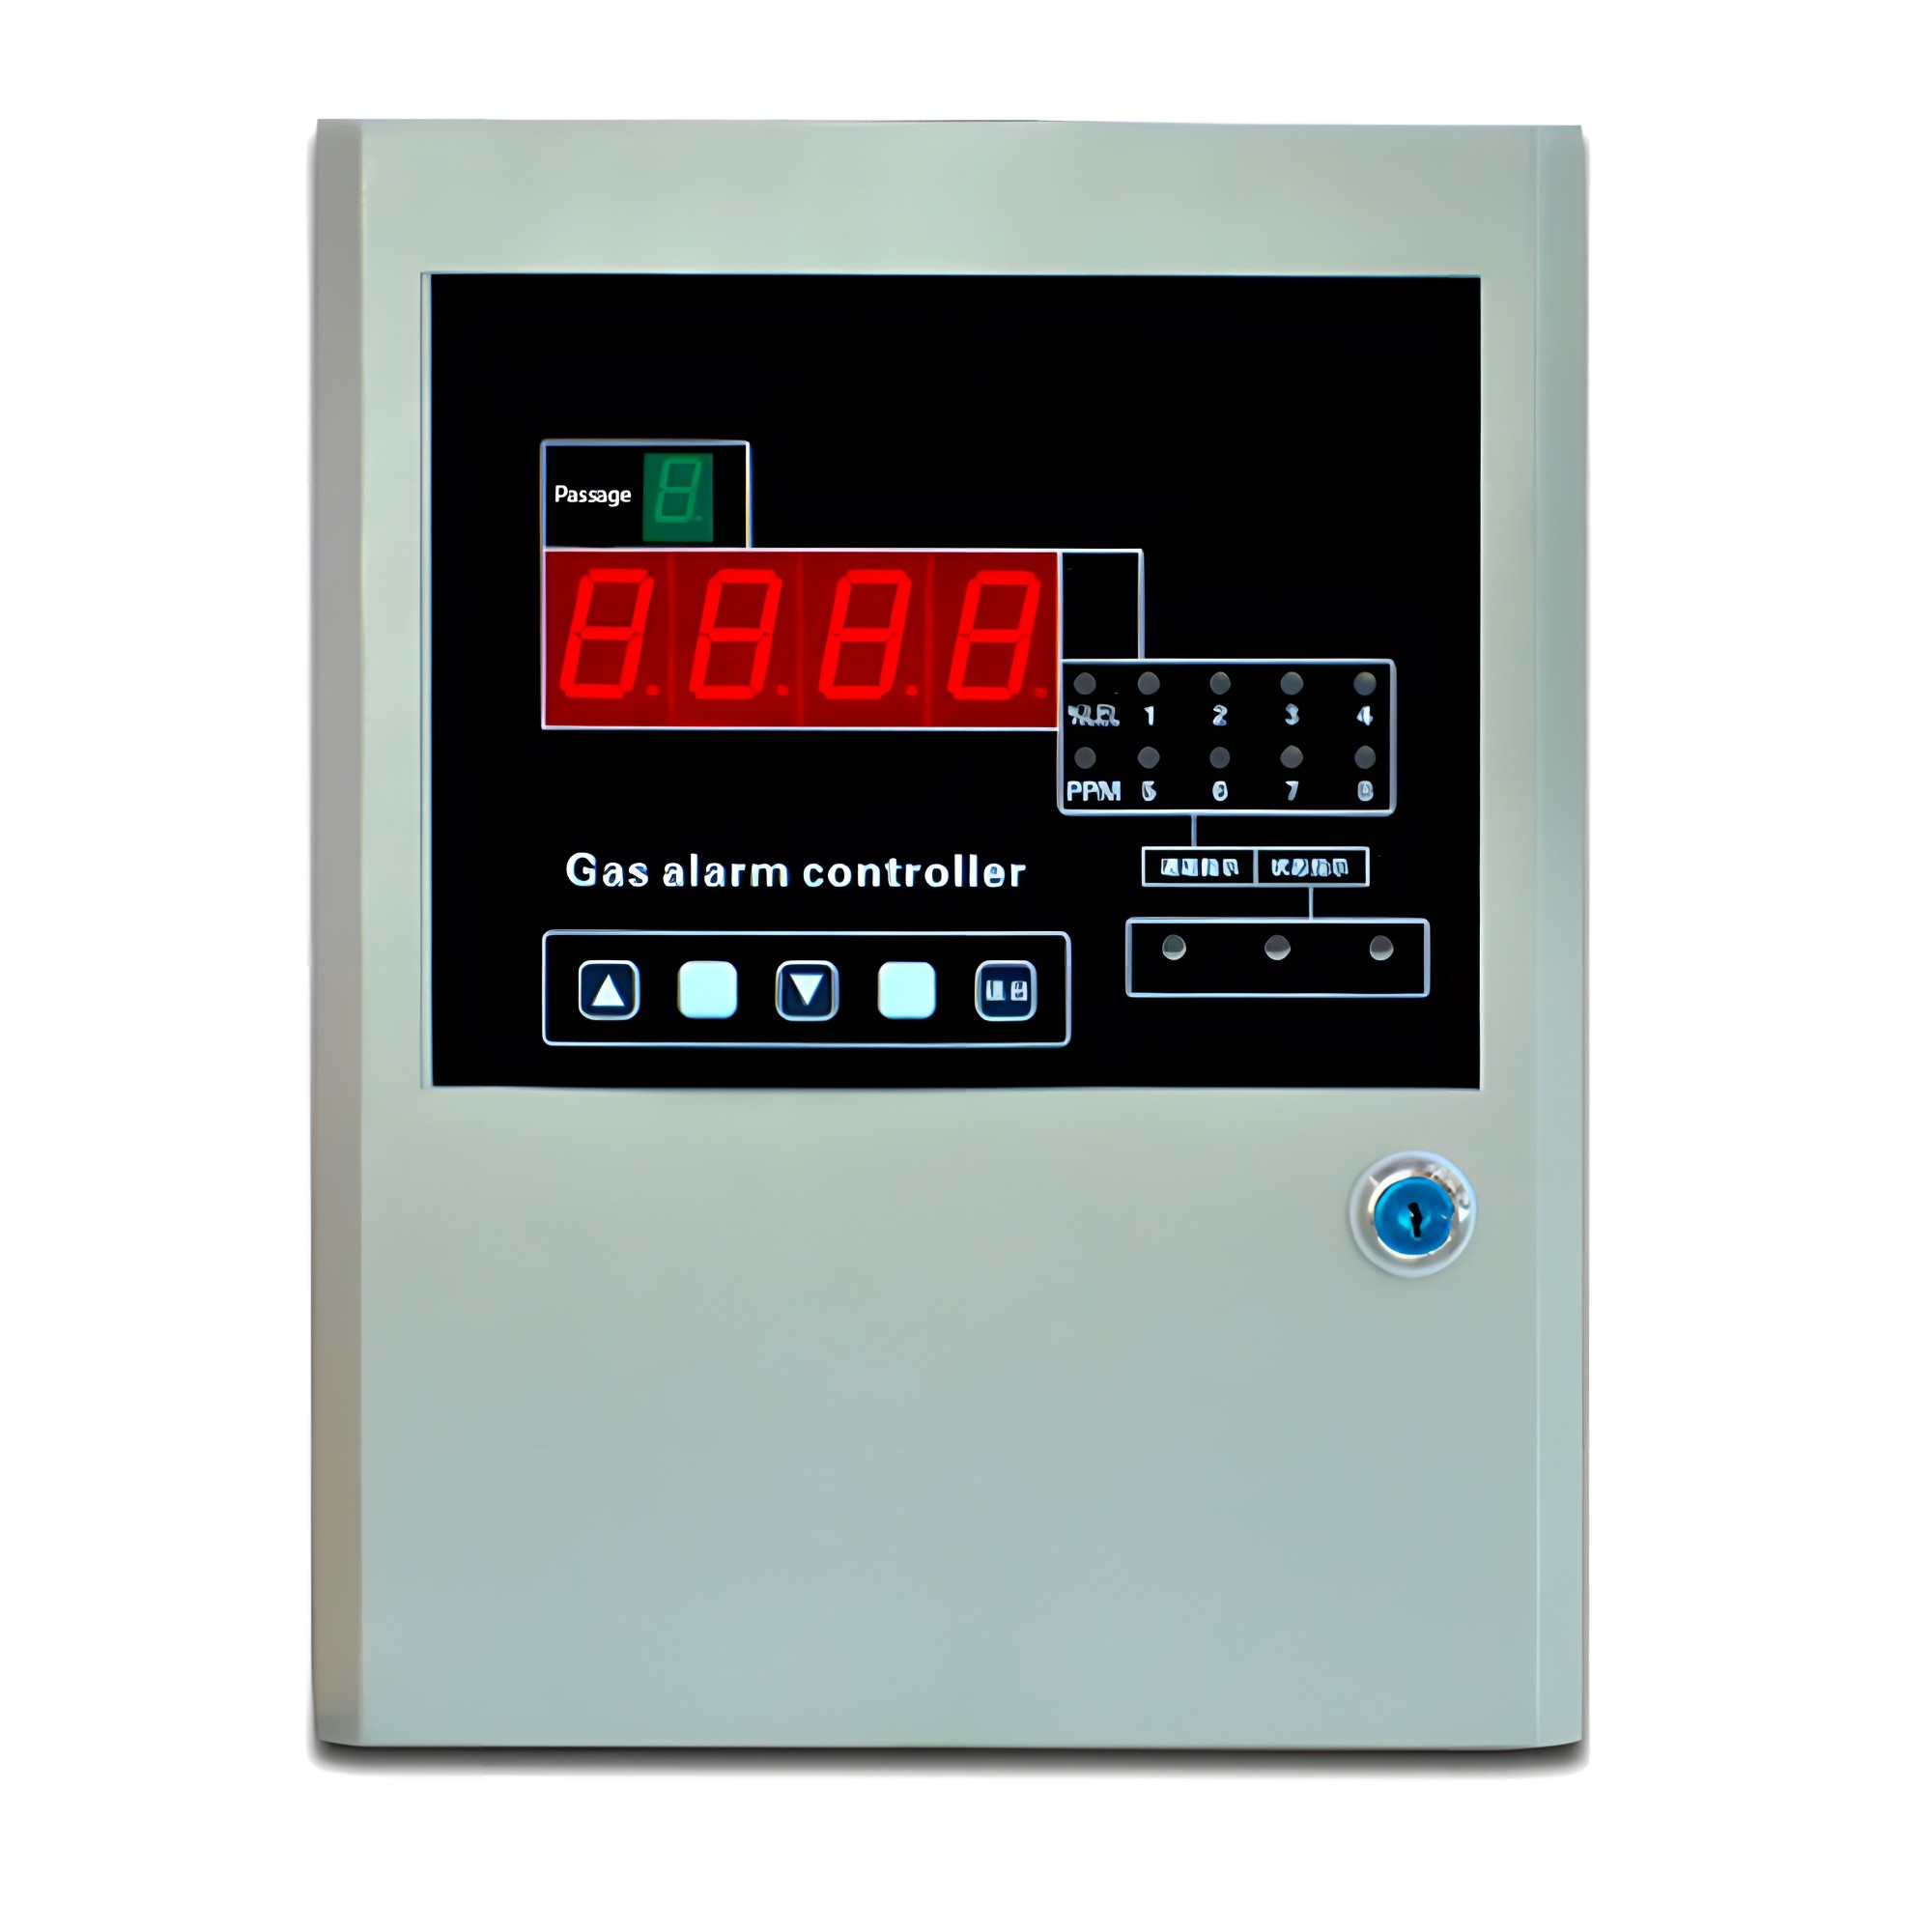 D6000 gas alarm controller